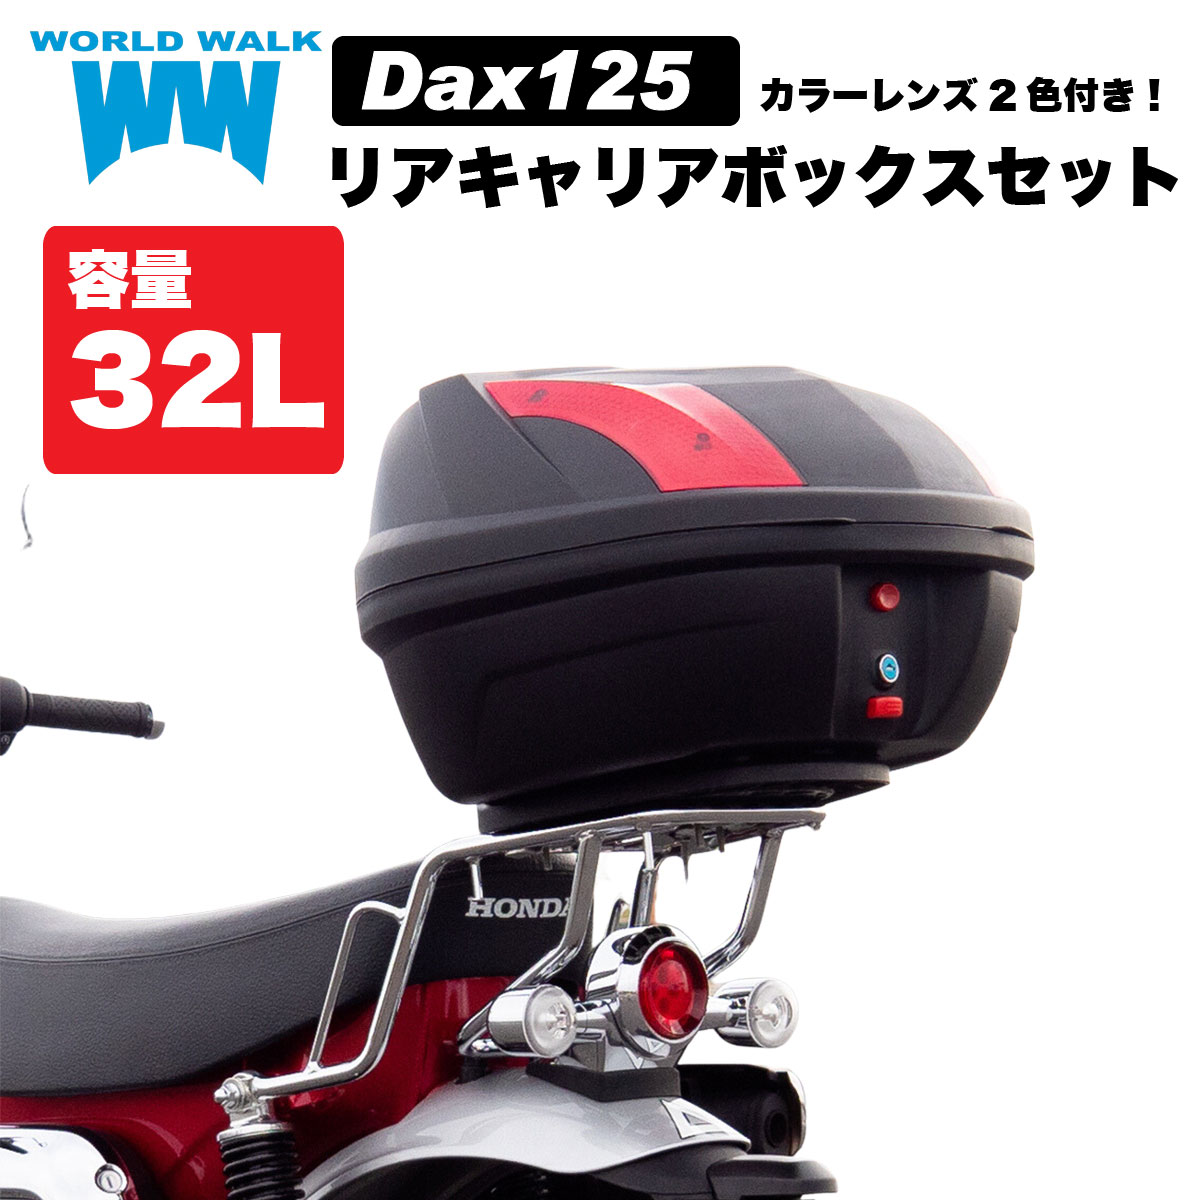 ダックス125 JB04 用リアキャリア 32L リアボックス セット wca-59-hwb32 トップケース バイクボックス インナー付き ブラック ツーリング 通勤 バイク